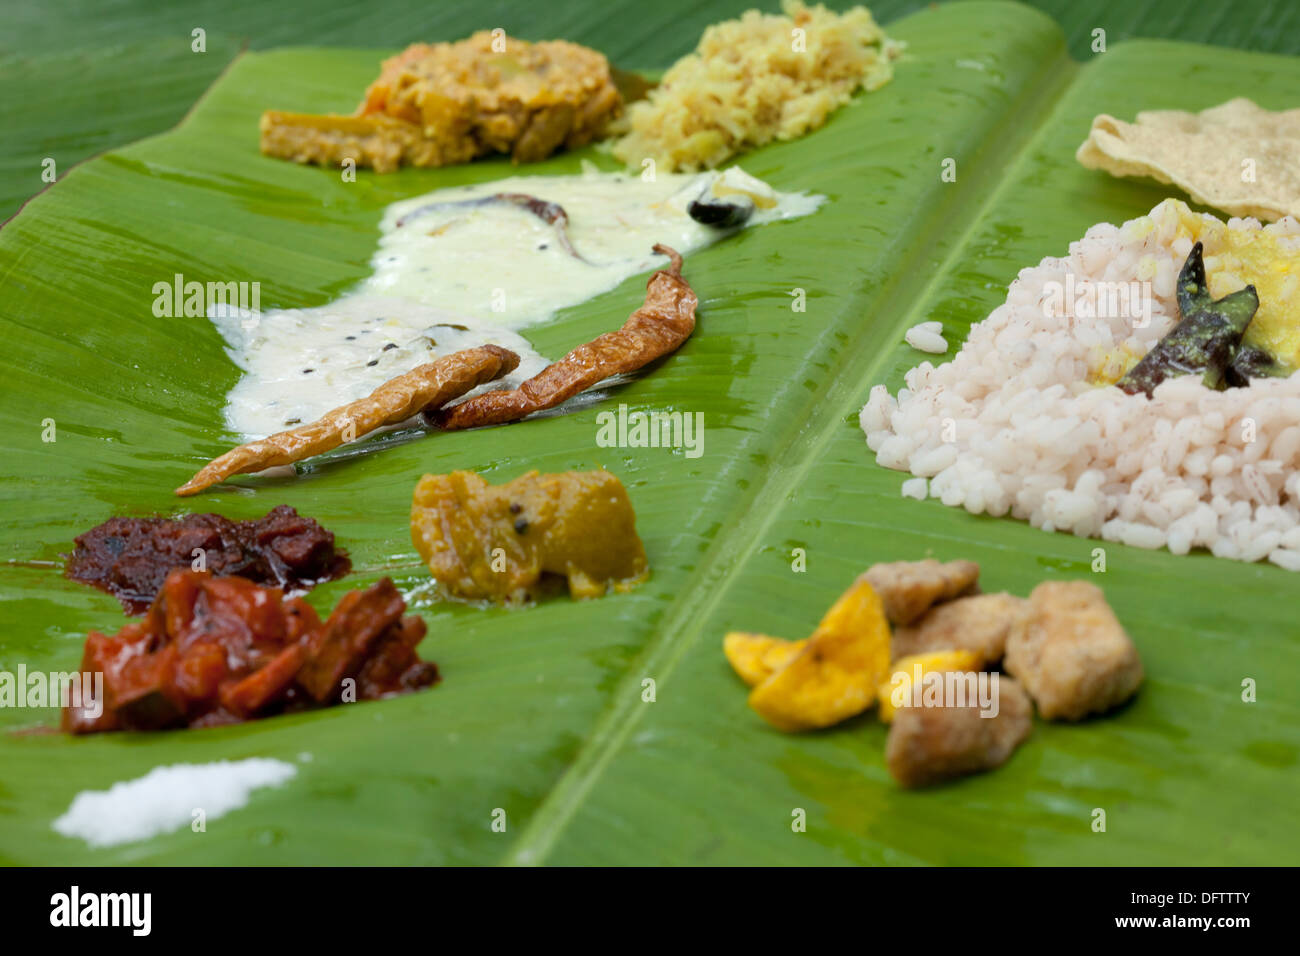 Festival onam aliments servis sur des feuilles de banane Banque D'Images